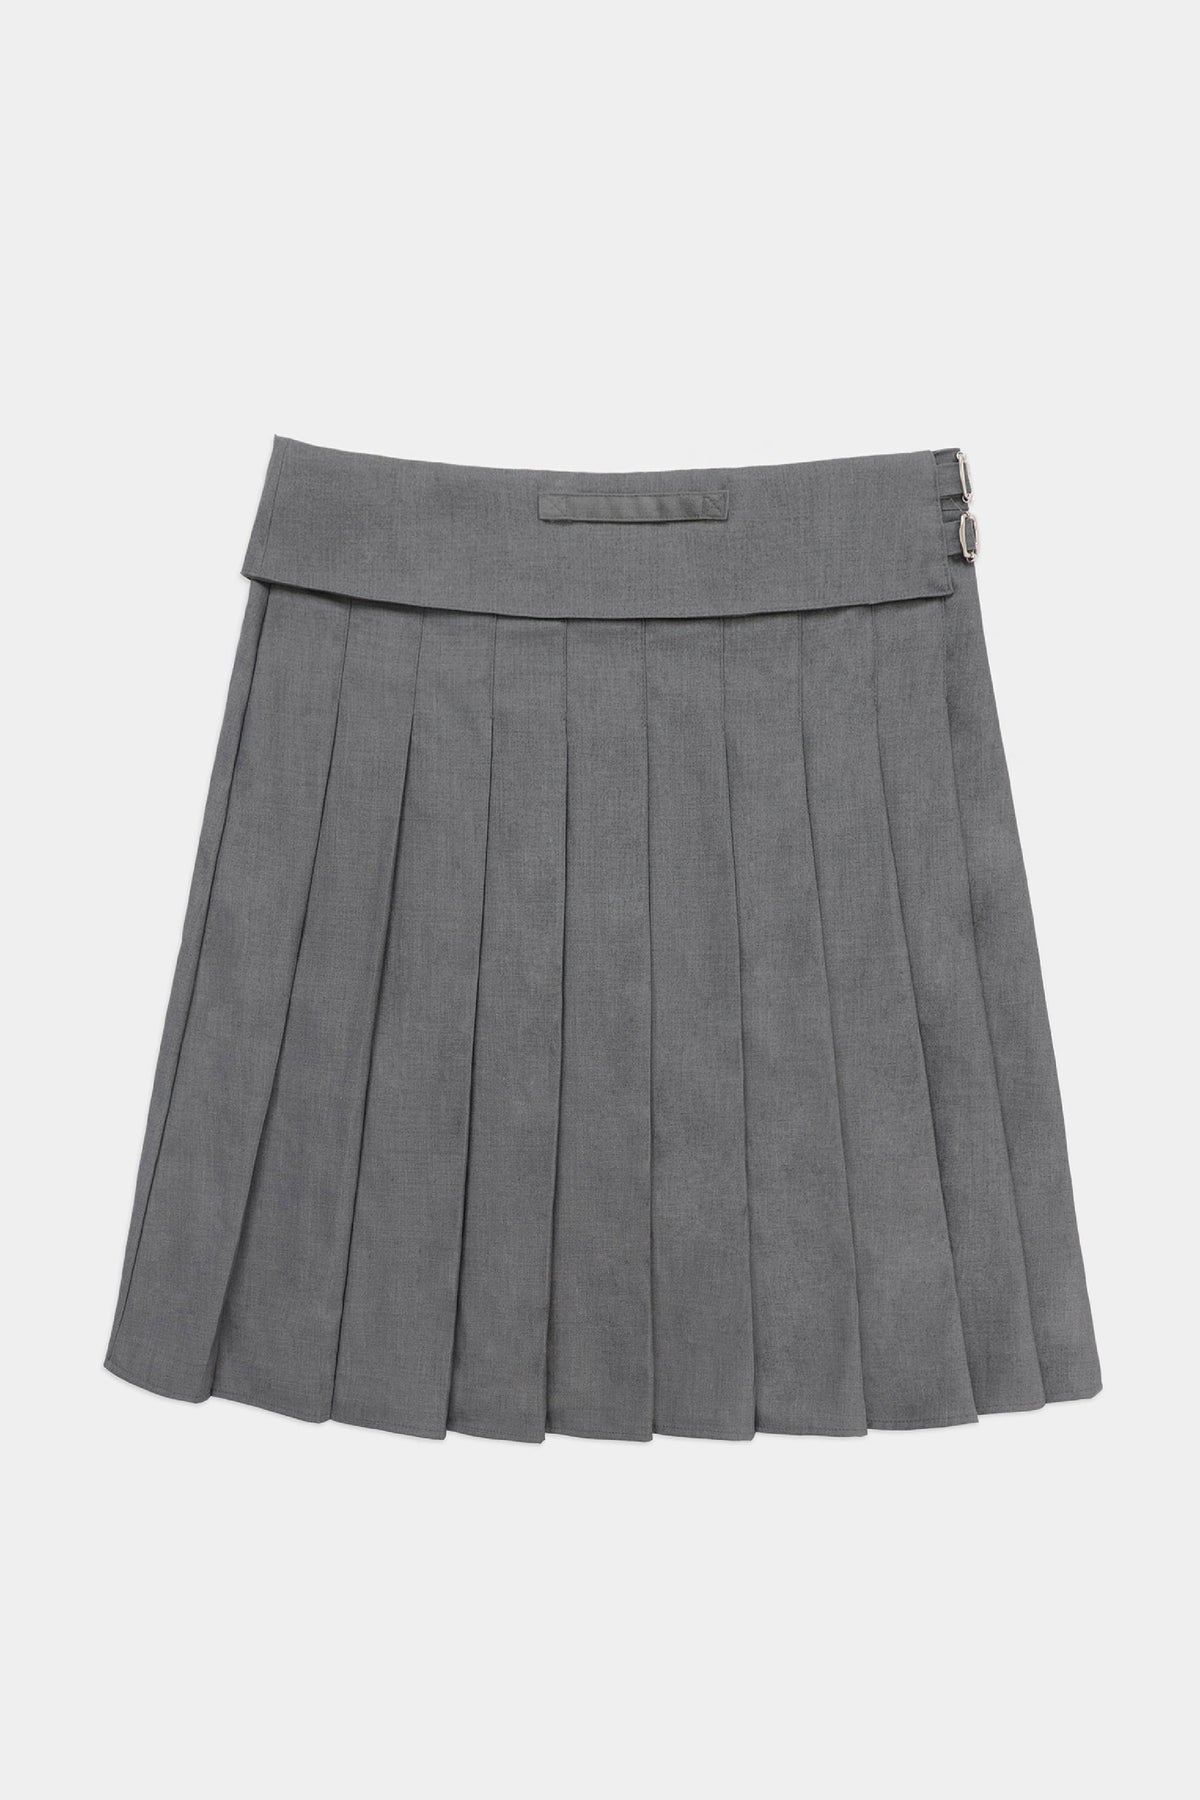 Badblood Proto Gabardine Midi Pleated Skirt Charcoal